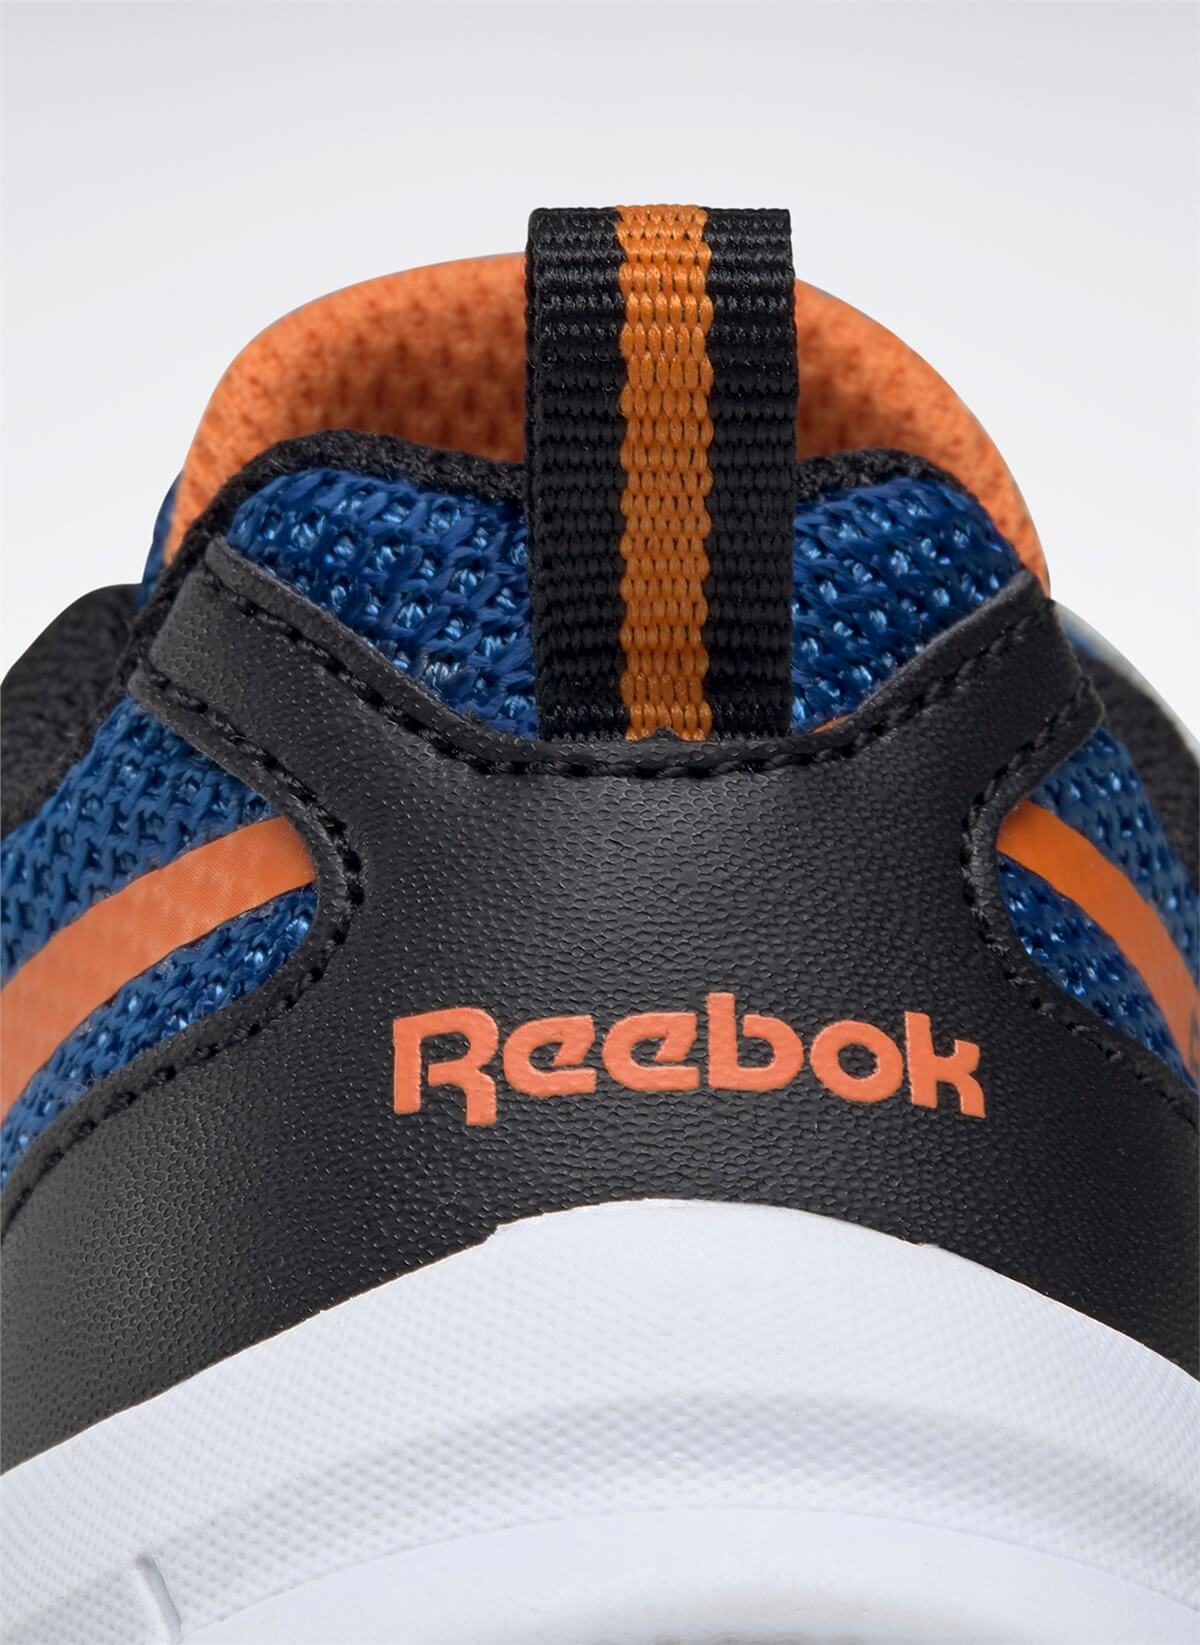 Reebok FW8456 REEBOK RUSH RUNNER 3.0 ALT Erkek Çocuk Yürüyüş Ayakkabısı